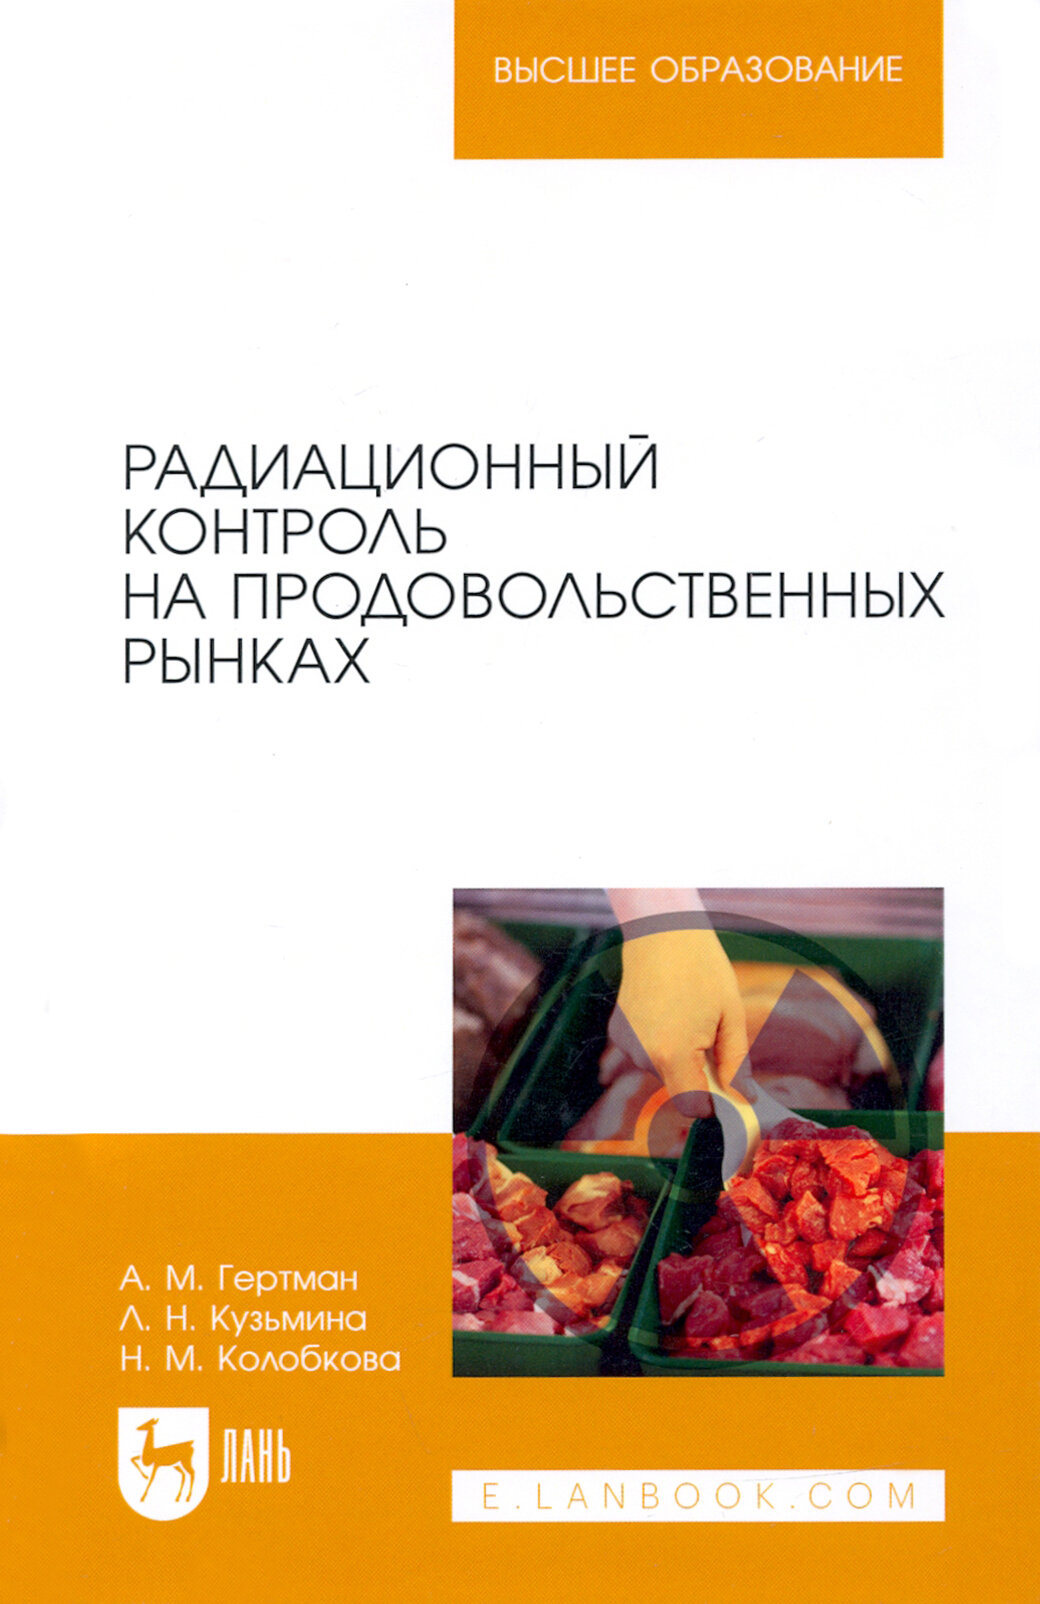 Радиационный контроль на продовольственных рынках учебное пособие для вузов - фото №2